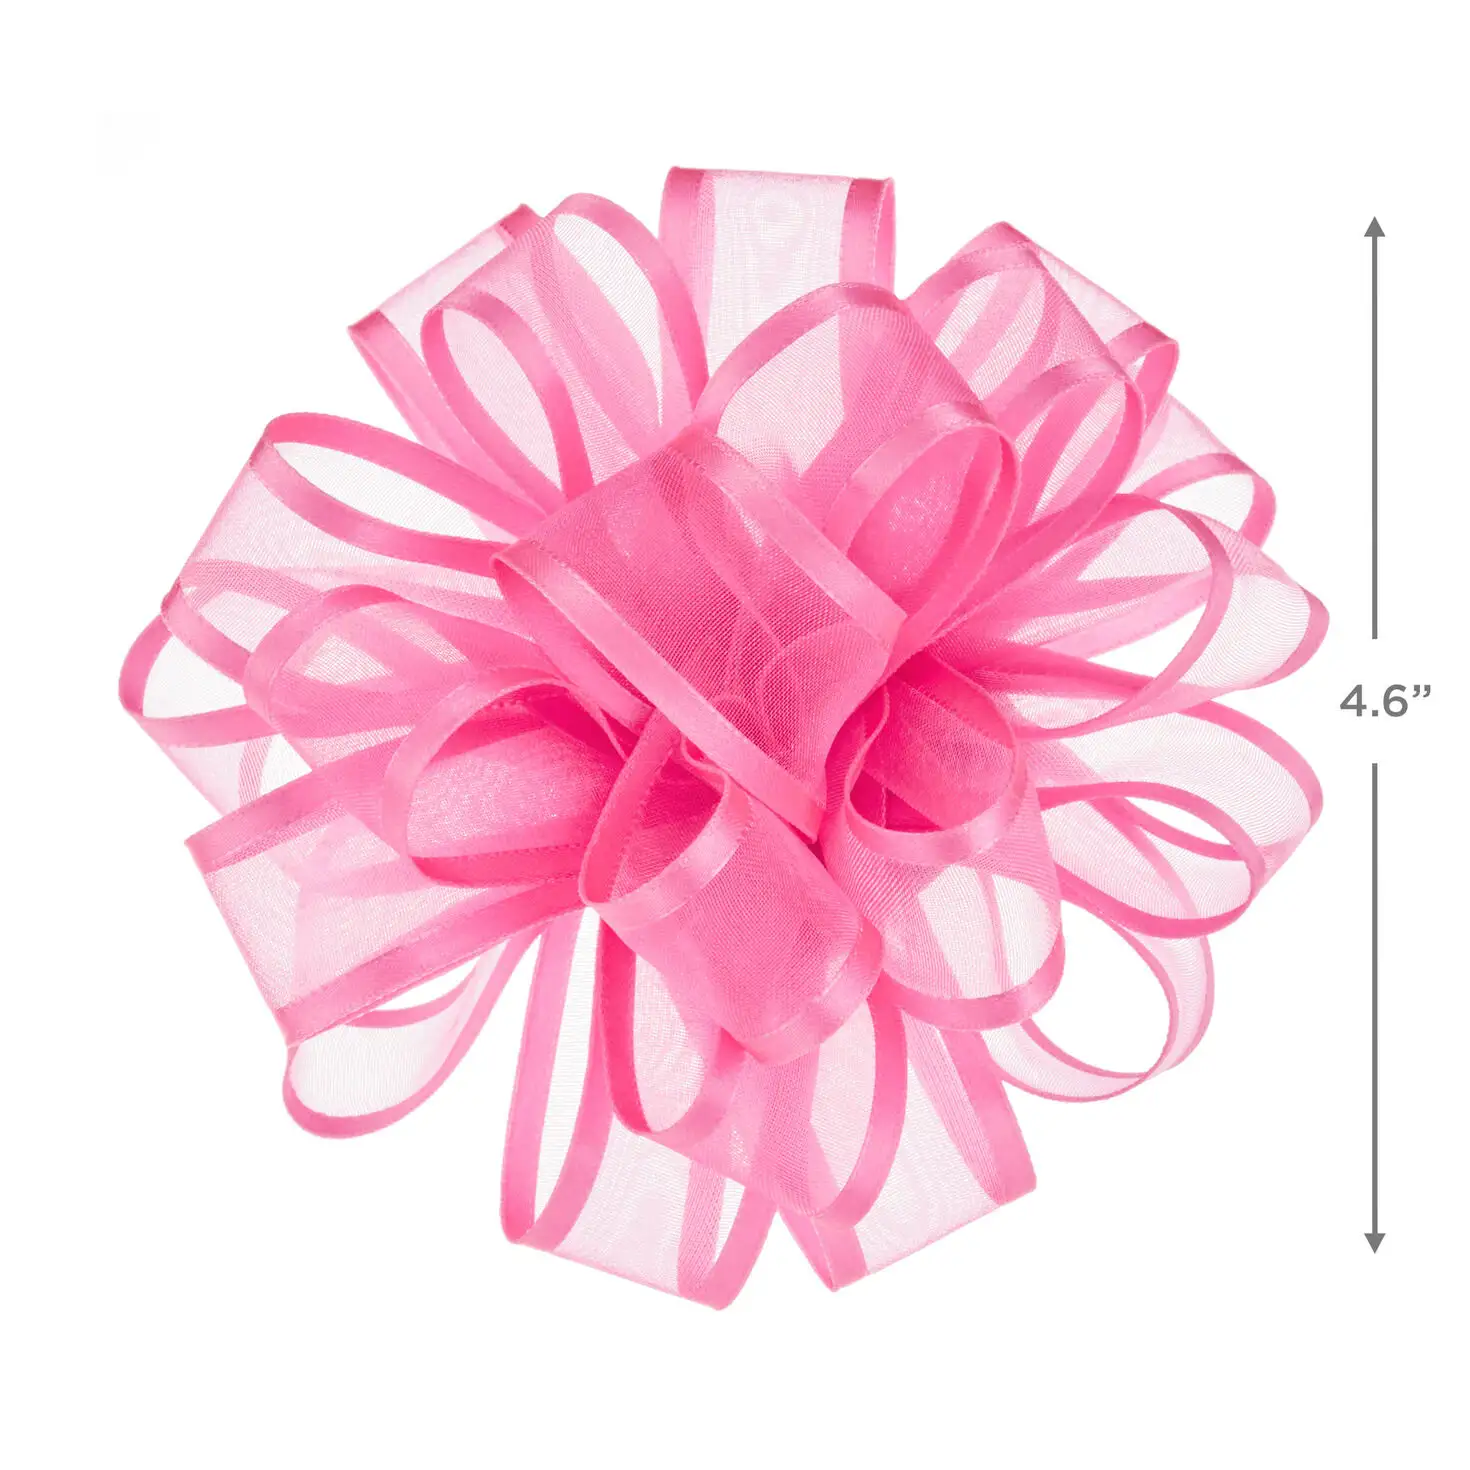 Sheer Ribbon Gift Bow Gift Wrapping for Mother's Day Festival Celebrity Decoration